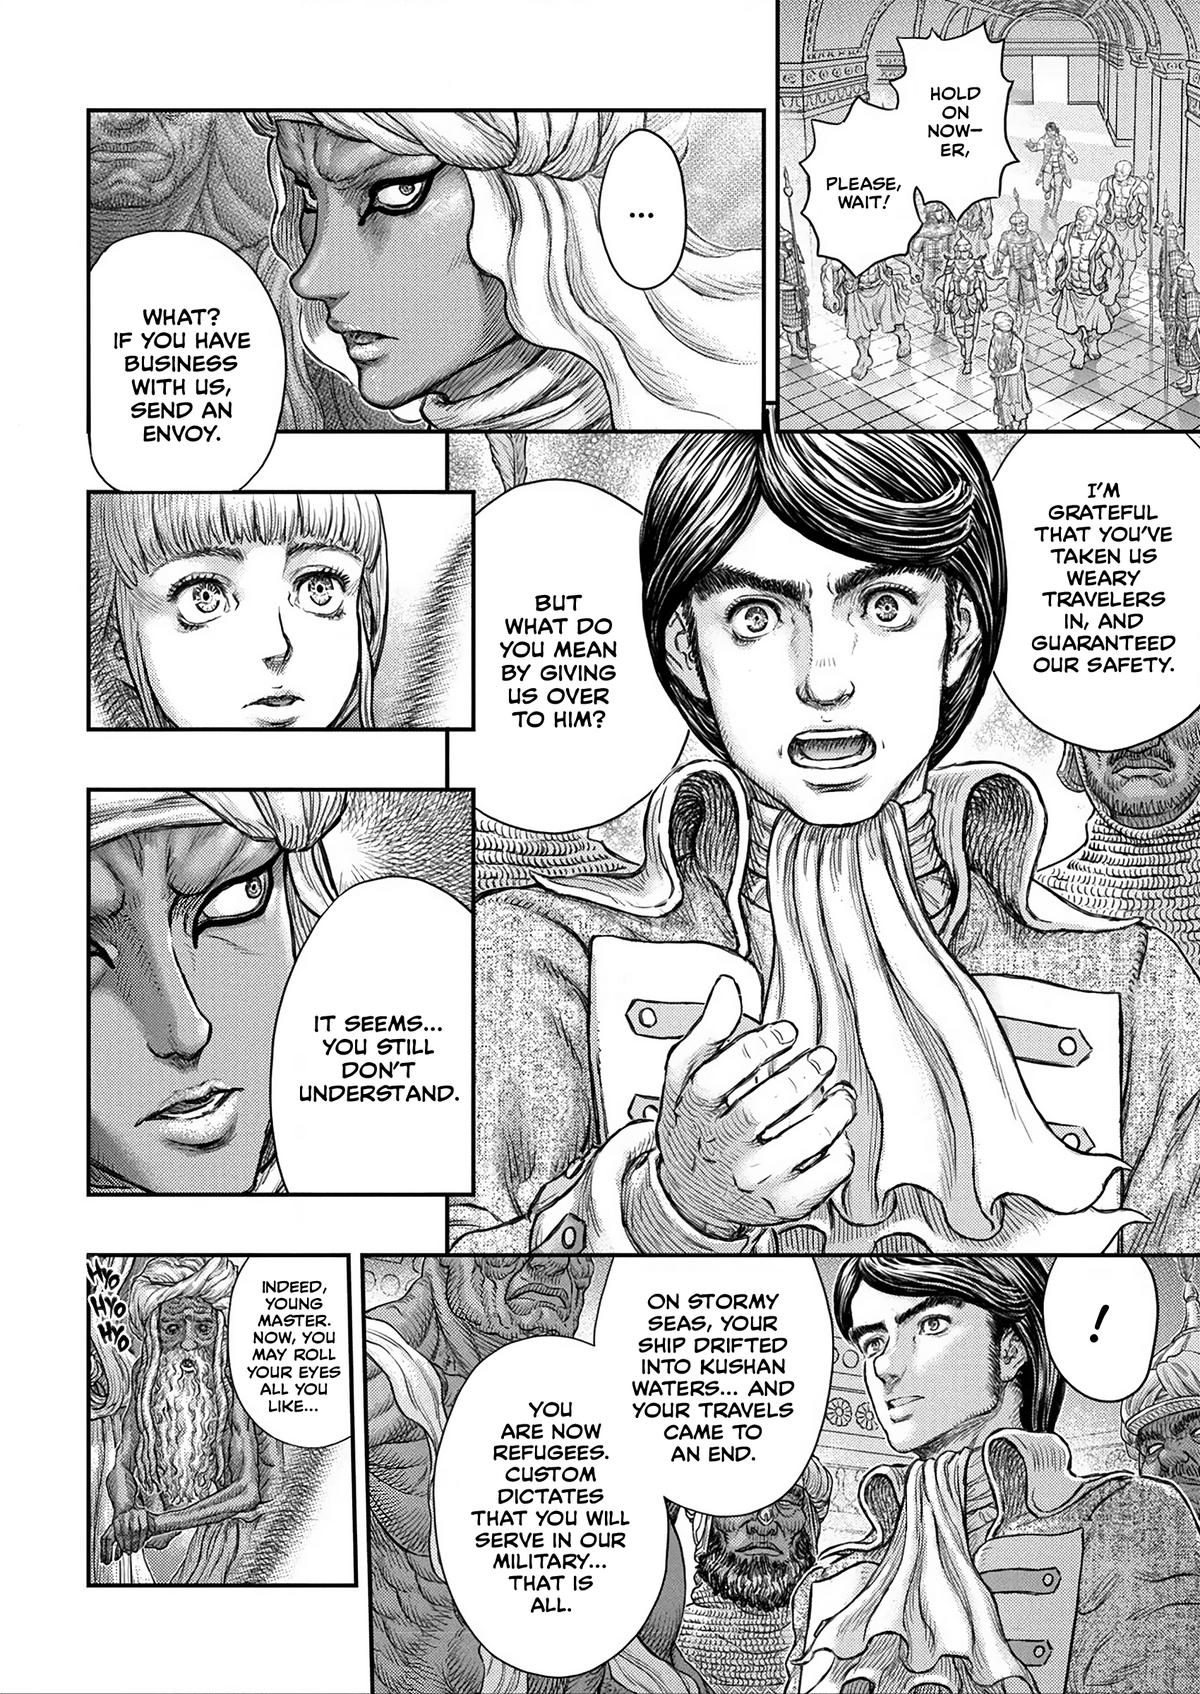 Berserk Manga Chapter 376 image 13